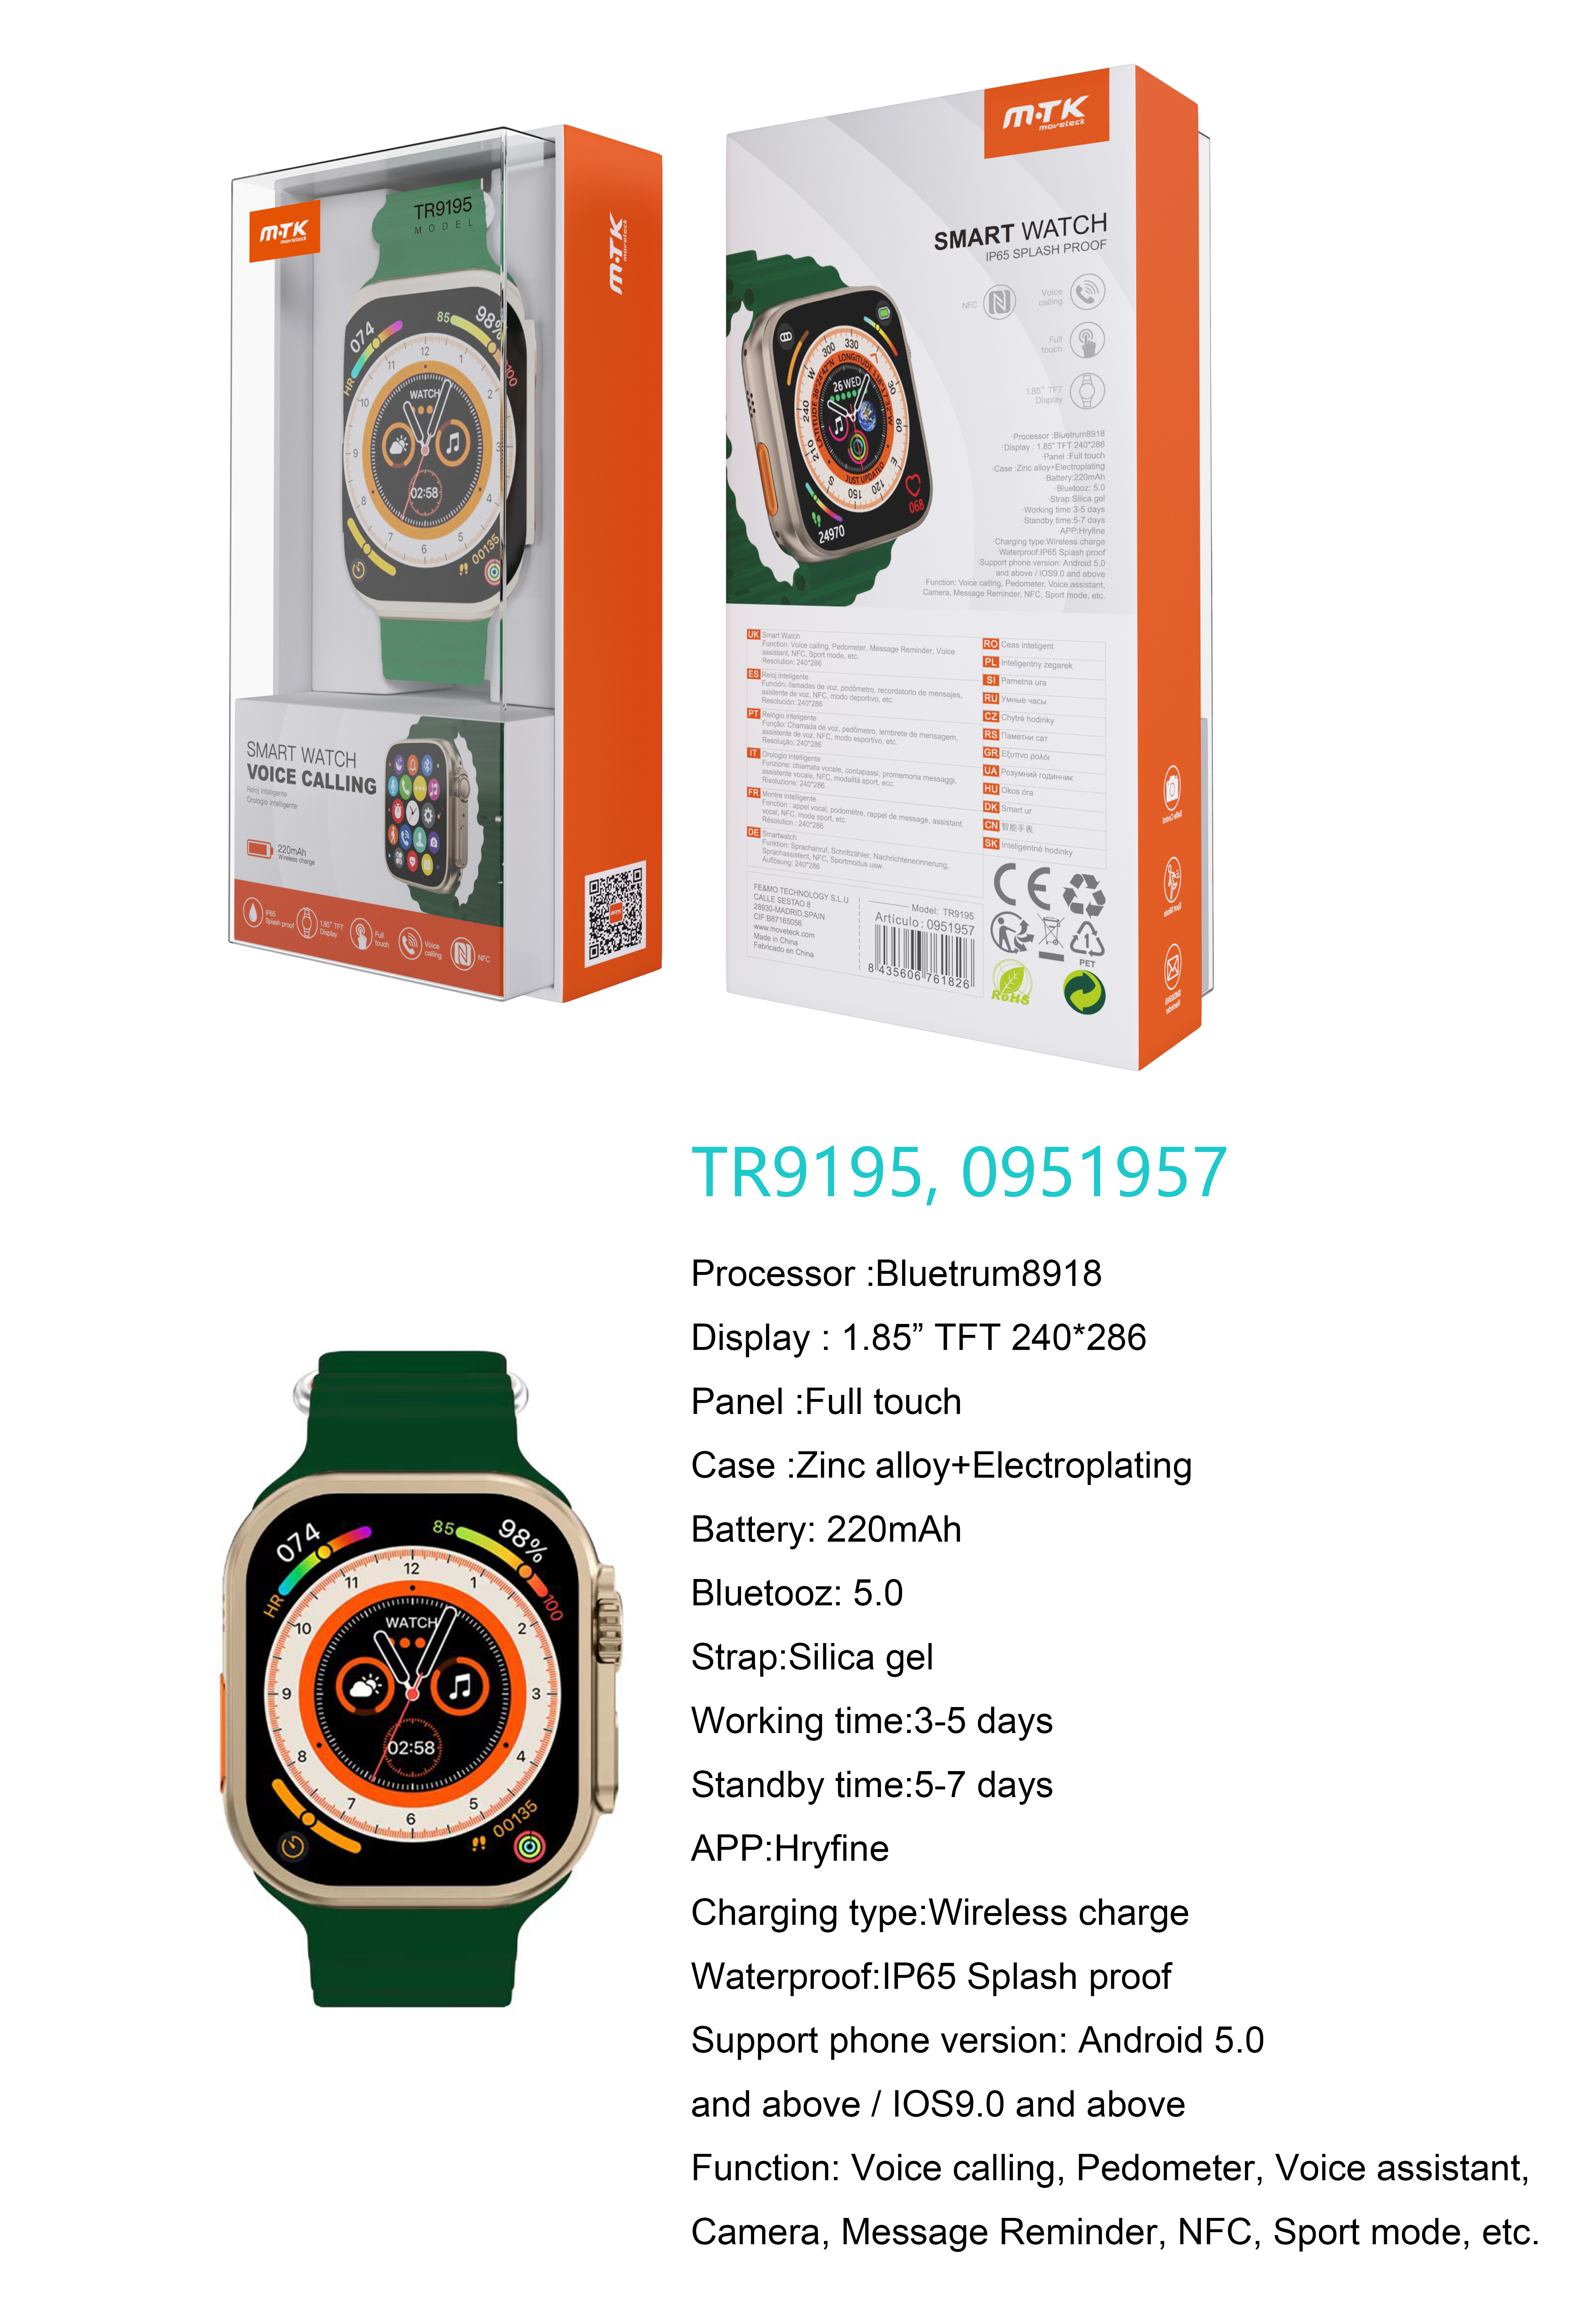 TR9195 VE Reloj Inteligente con bluetooth 5.0, Pantalla tactil de 1.85 pulgadas, Soporta NFC, llemadas, Asistente de Voz,Impermeable IP65, Bateria 220